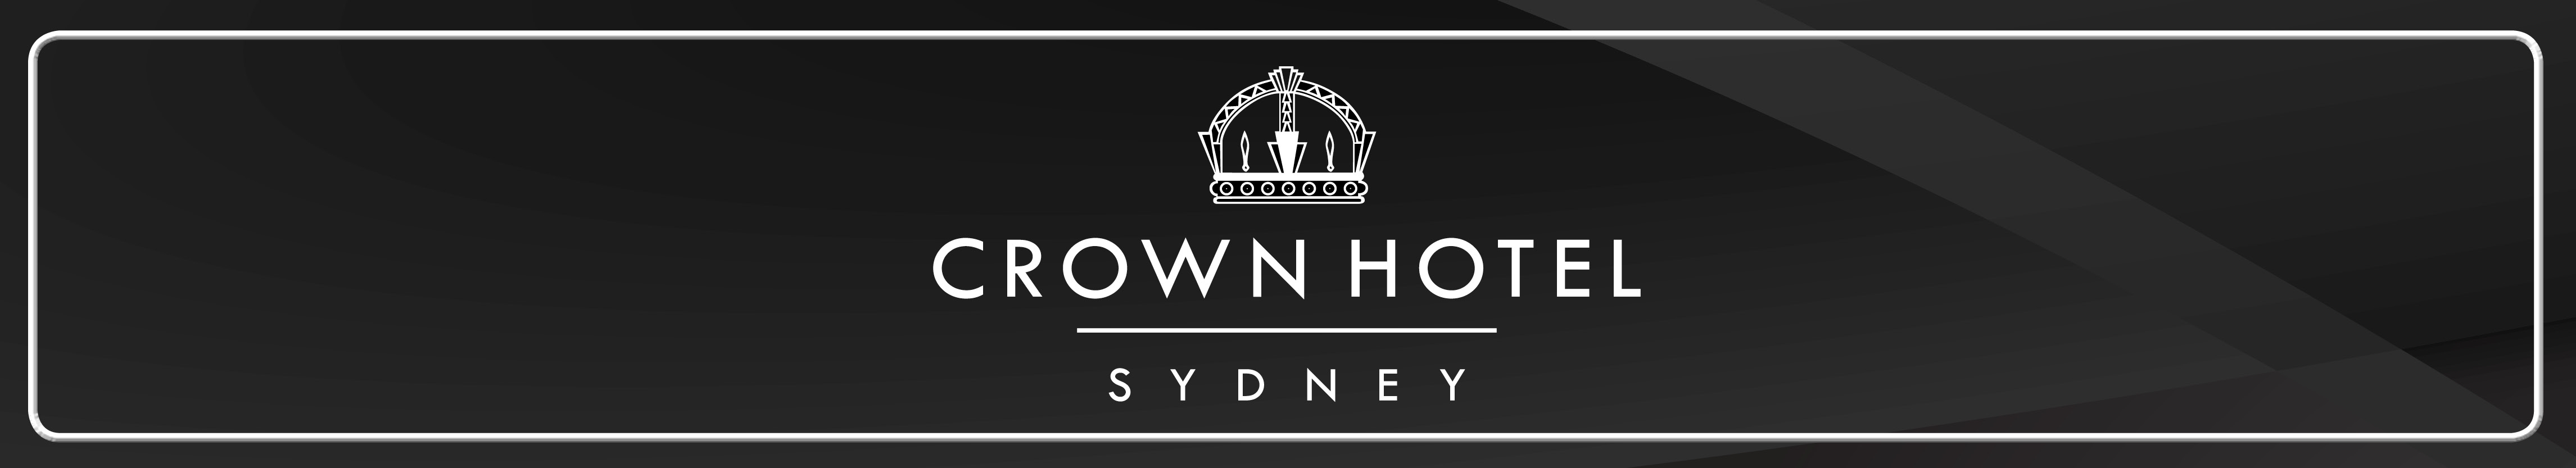 Crown Hotel Sydney